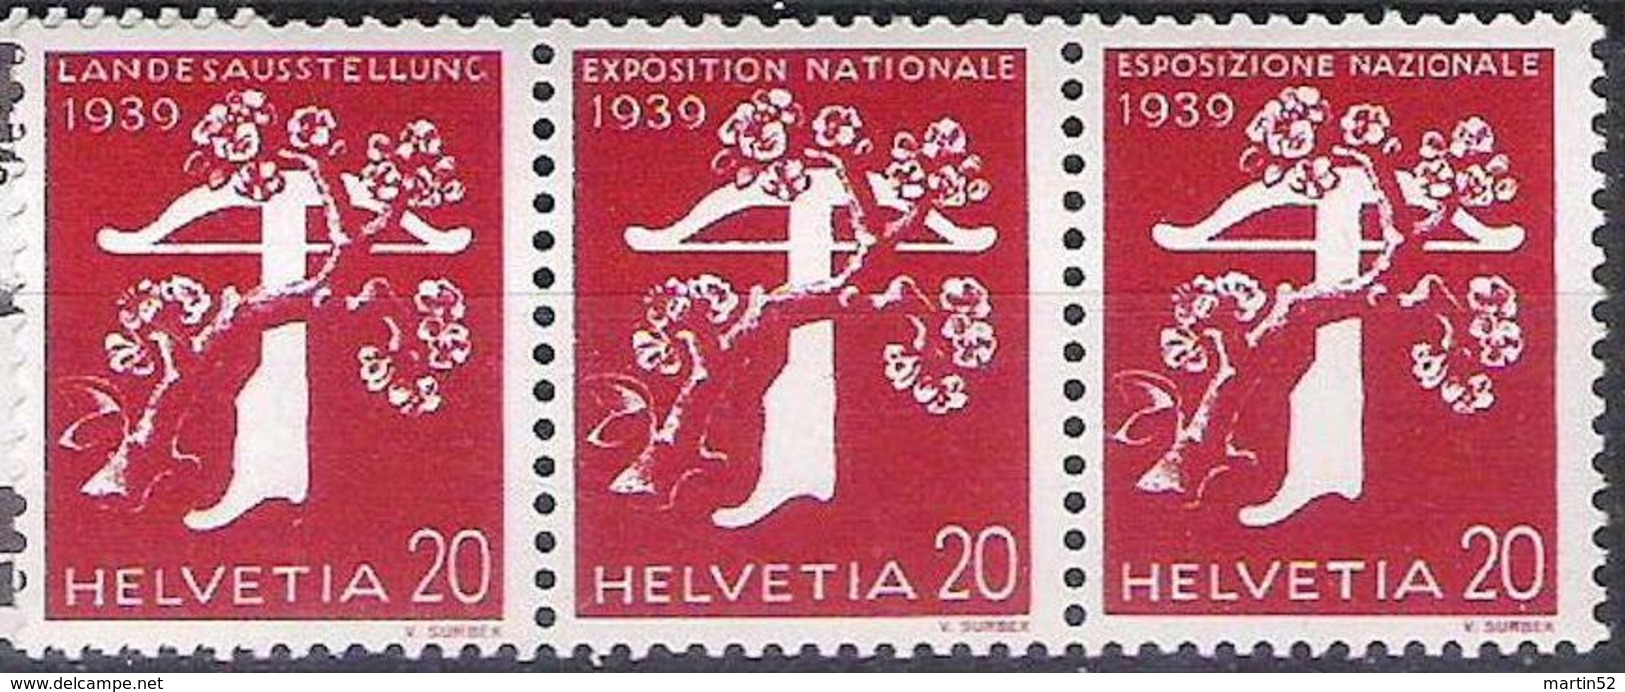 Schweiz Suisse Zusammendruck Se-tenant 1939: Zu Z27a Mi W20 ** MNH Mit Nummer Avec No O3755 (Zu CHF 48.00) - Coil Stamps